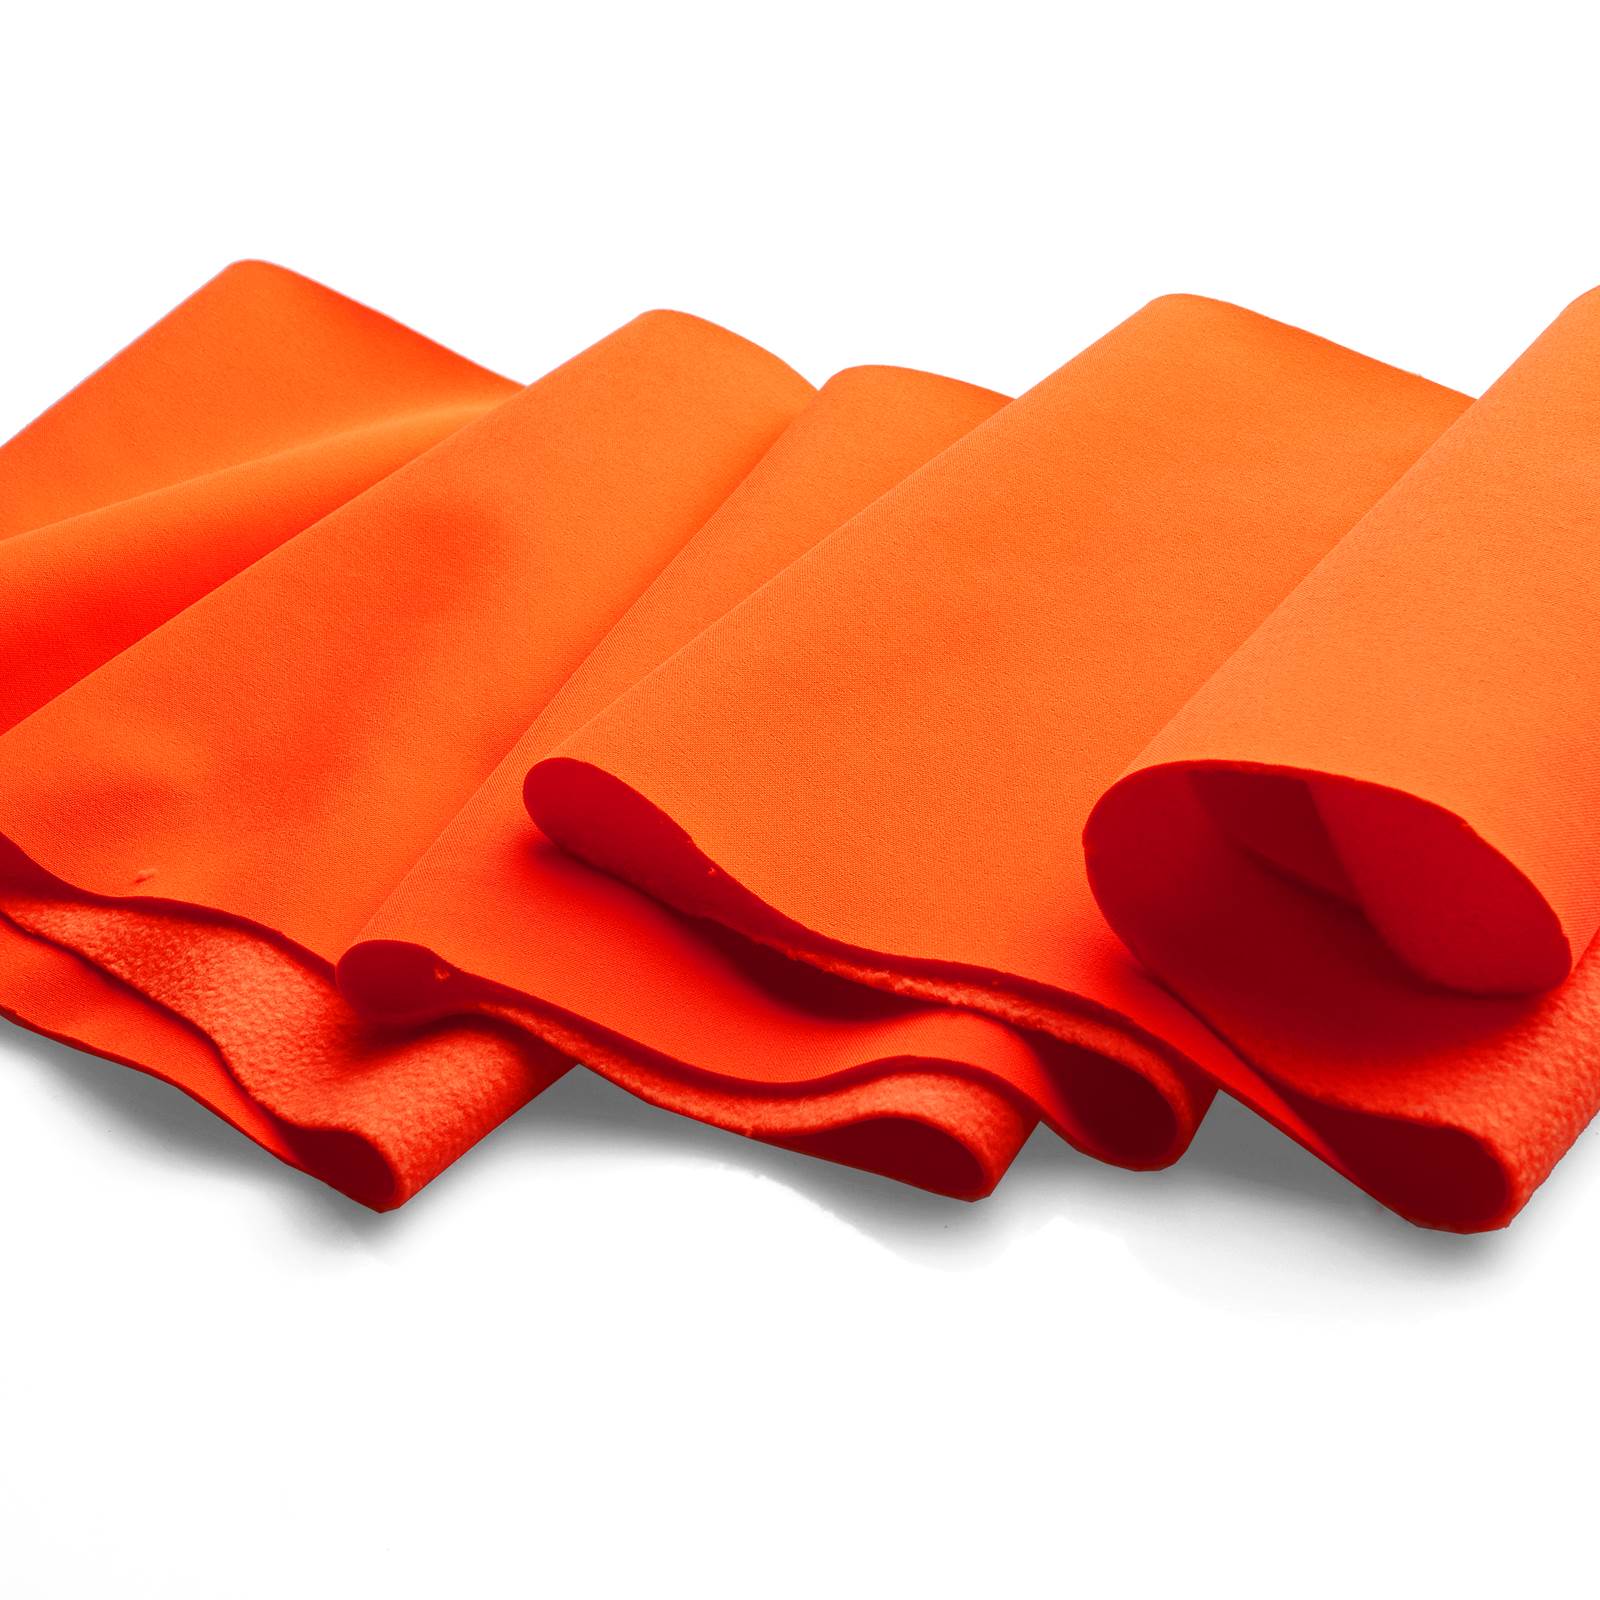 Softshell – A prueba de viento, impermeable y transpirable (naranja fluorescente)